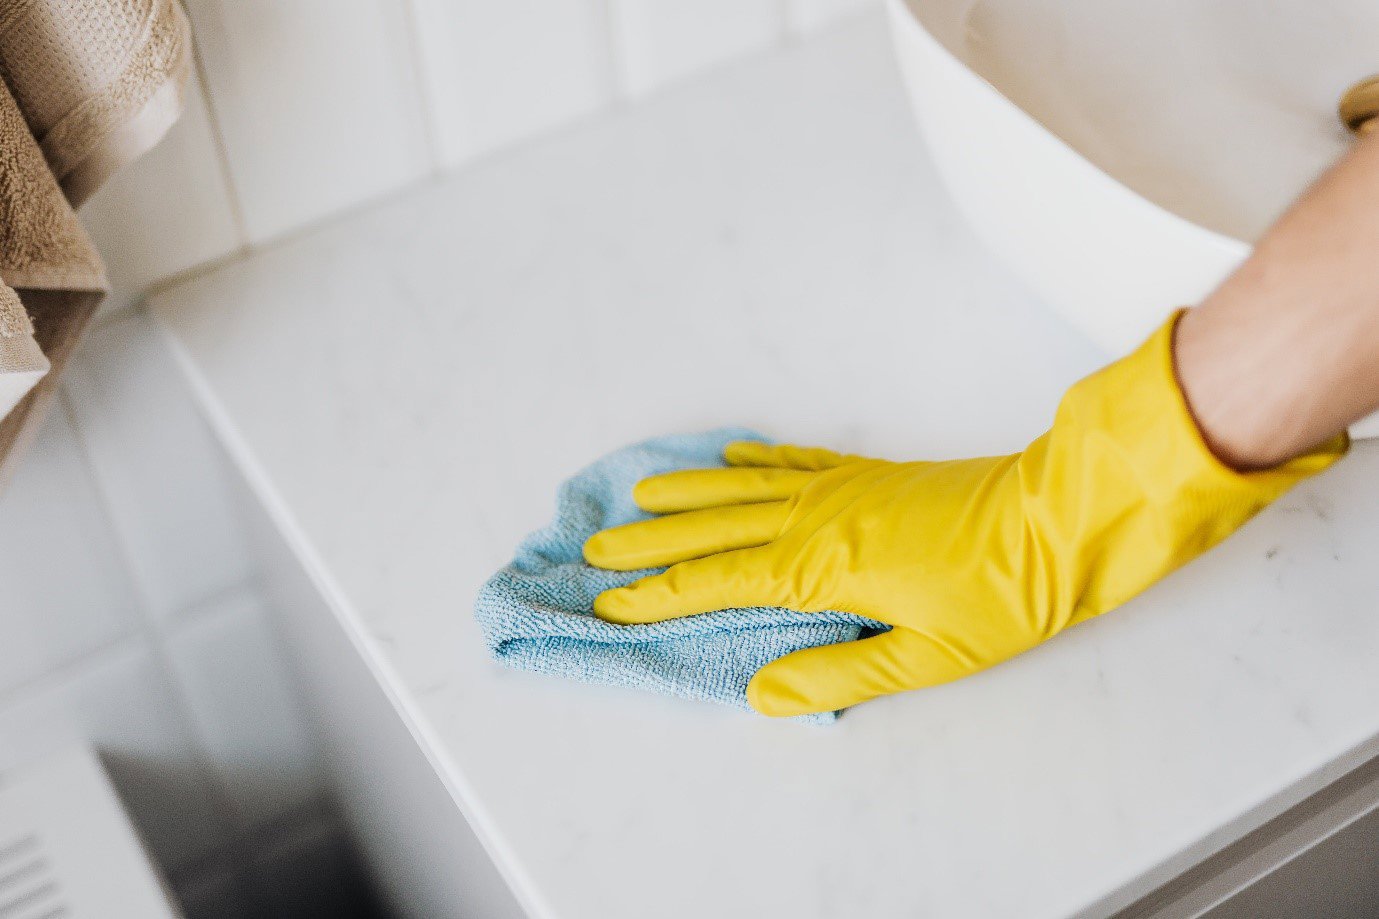 washing up wearing gloves